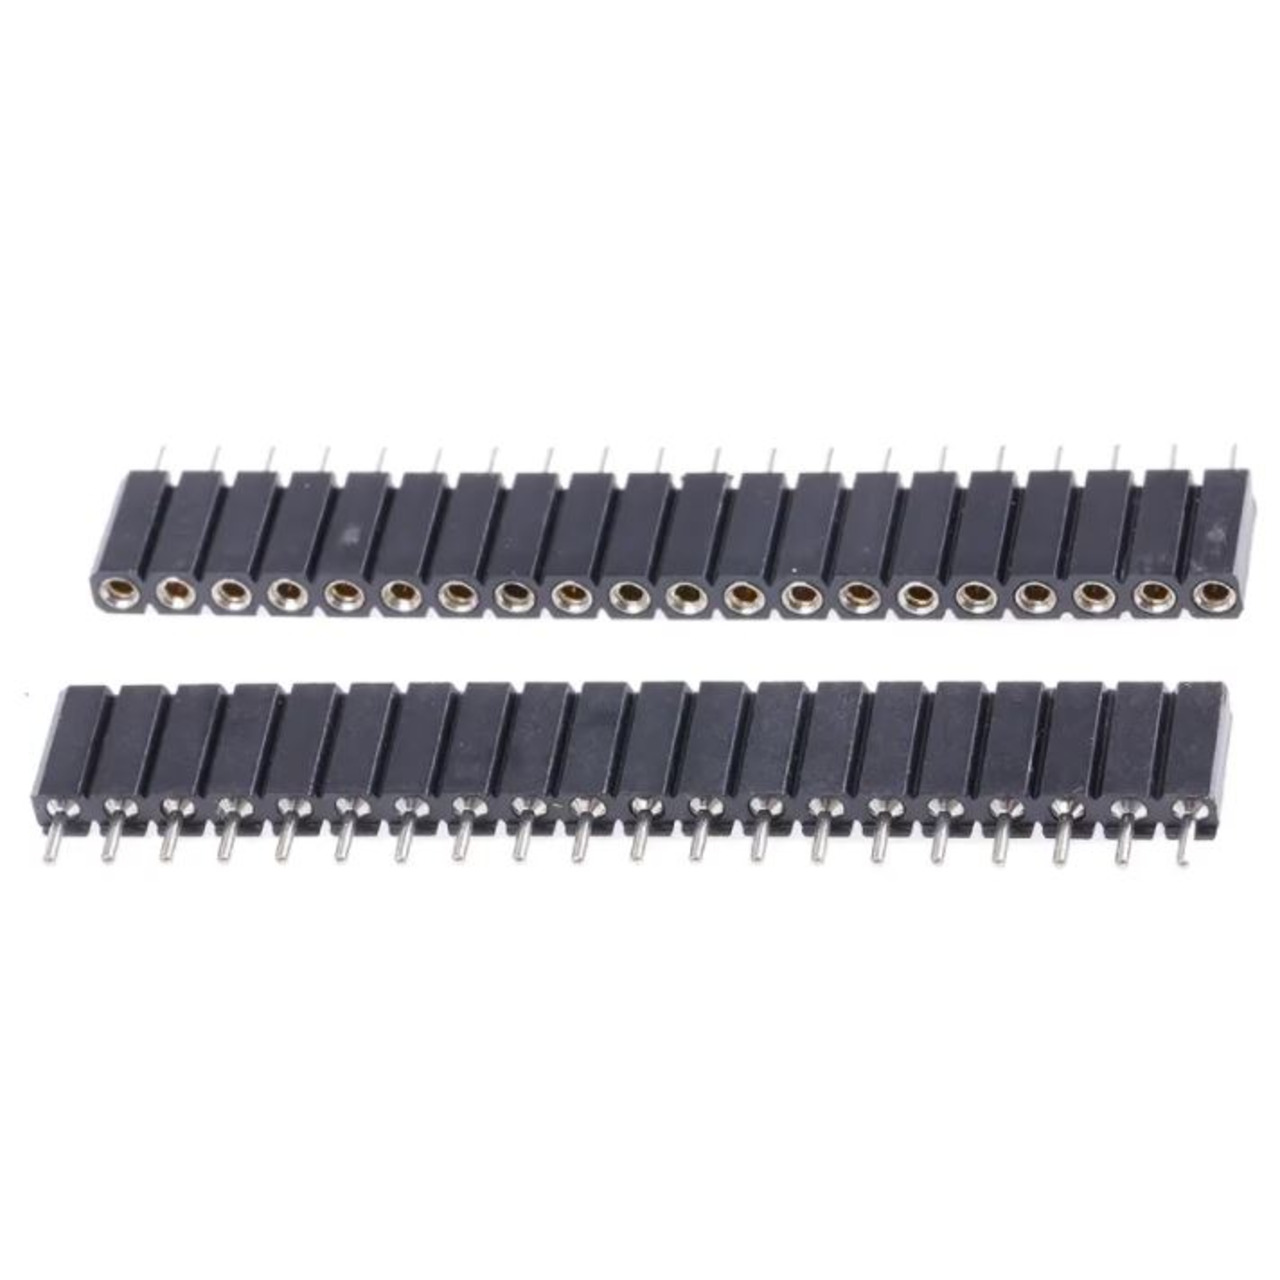 Präzisions-Buchsenleiste- 20-polig-1-reihig- gerade- Raster 2-54 mm für Stifte von - 0-7 bis 0-9 mm unter Komponenten